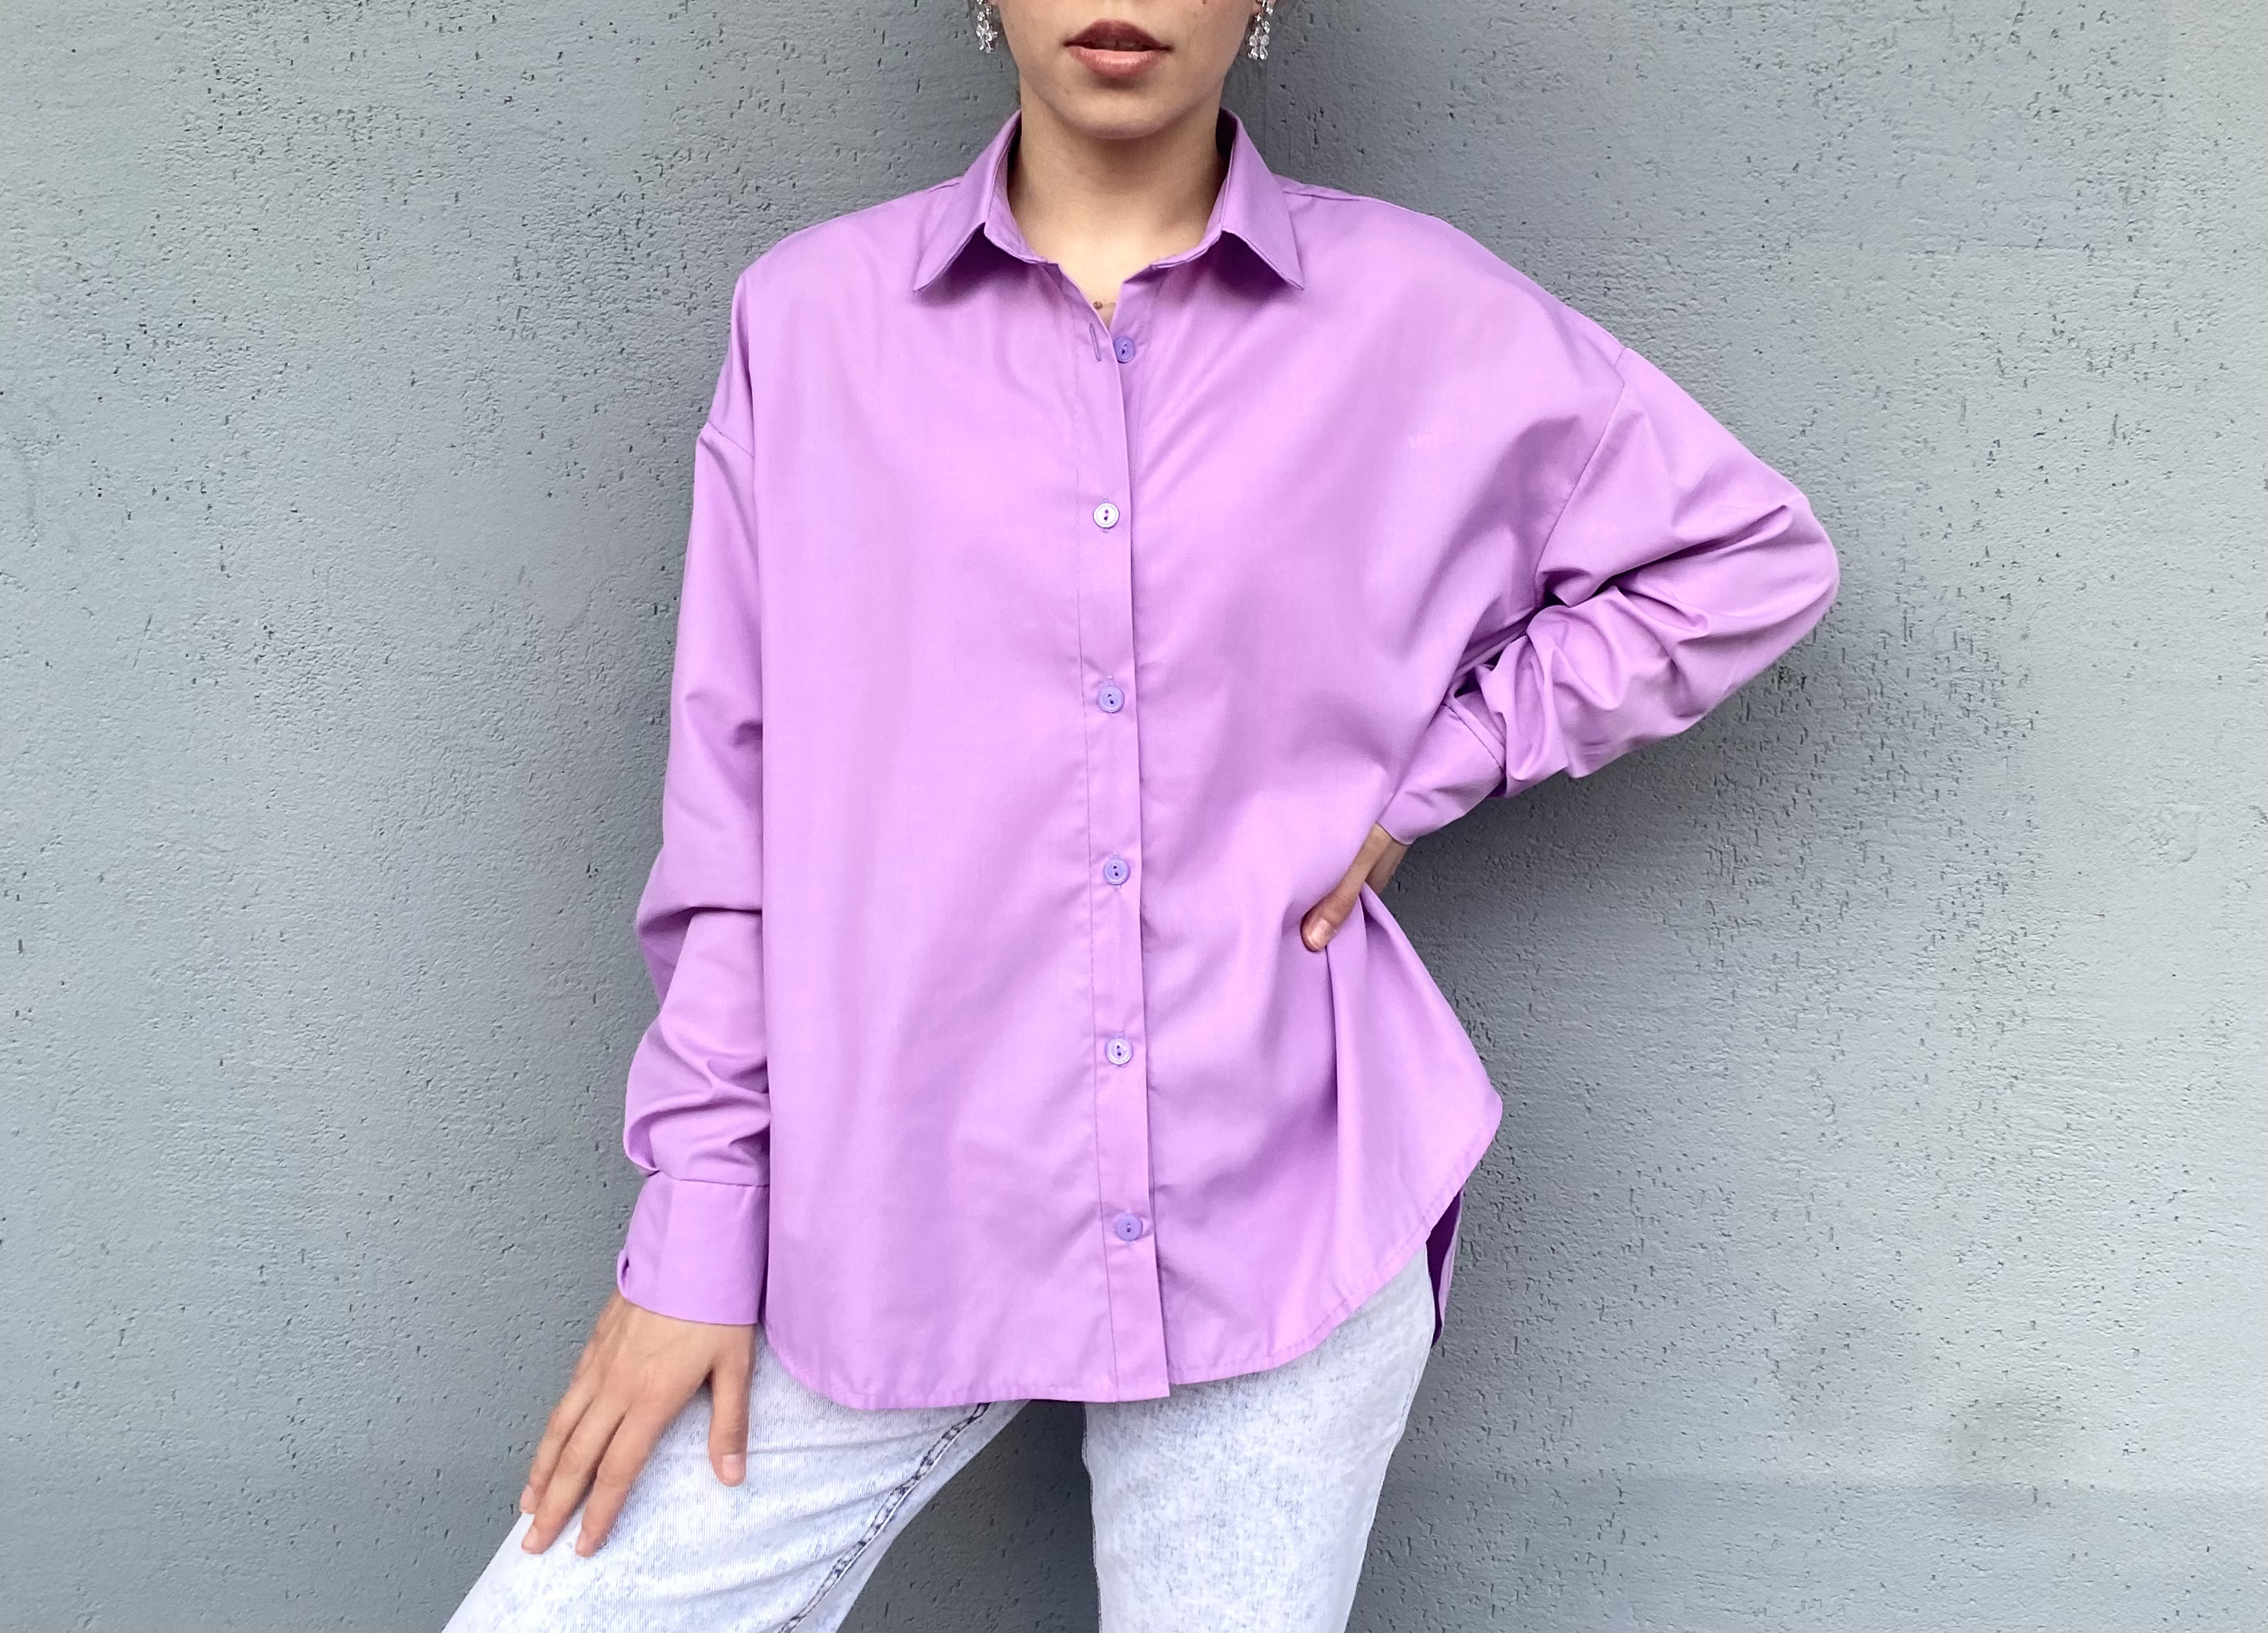 Фиолетовая рубашка женская